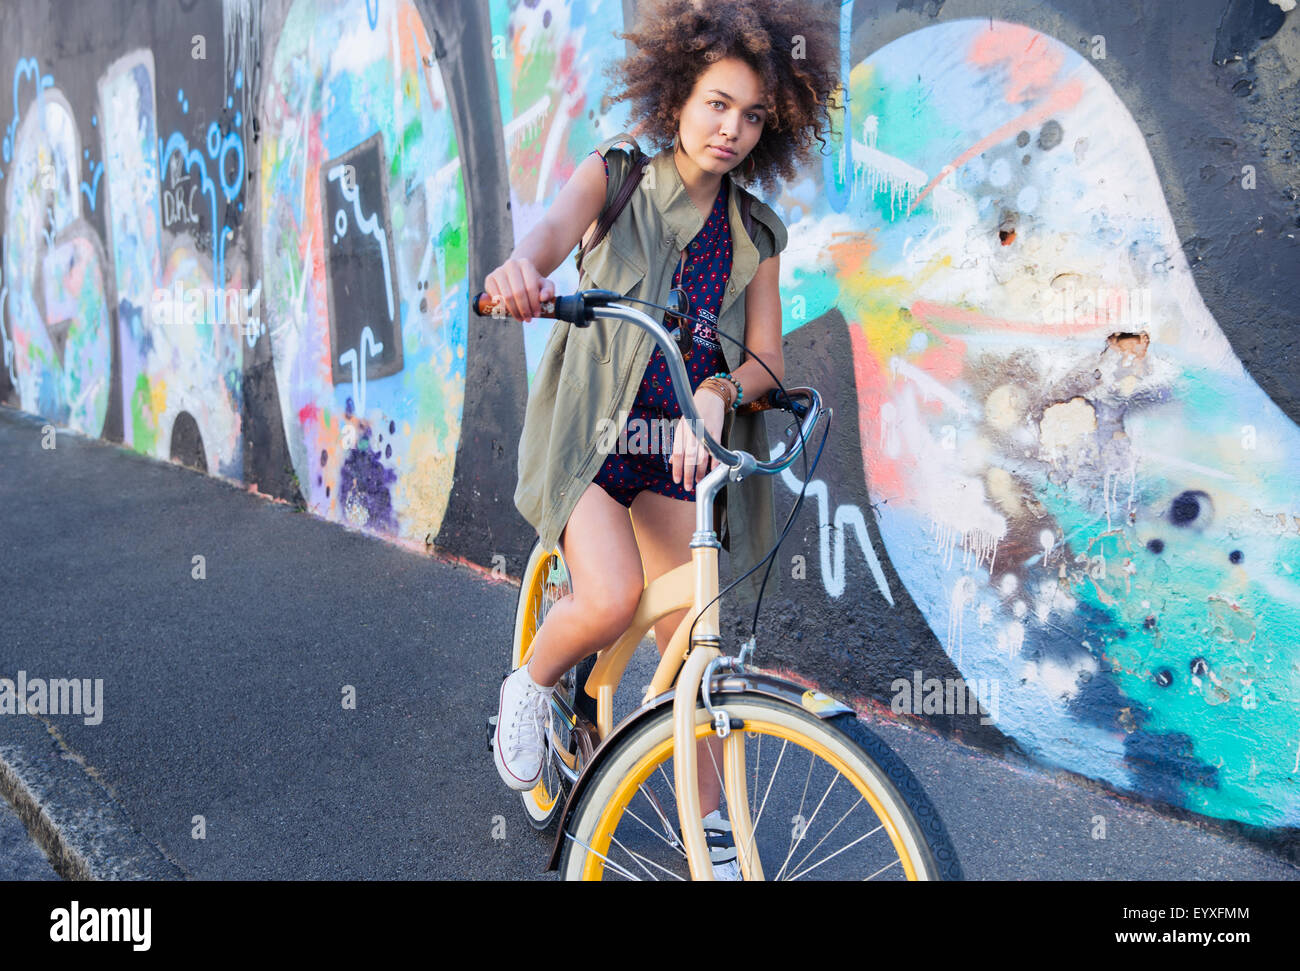 Porträt Ernst Frau mit Afro auf dem Fahrrad neben urban Graffitiwand Stockfoto